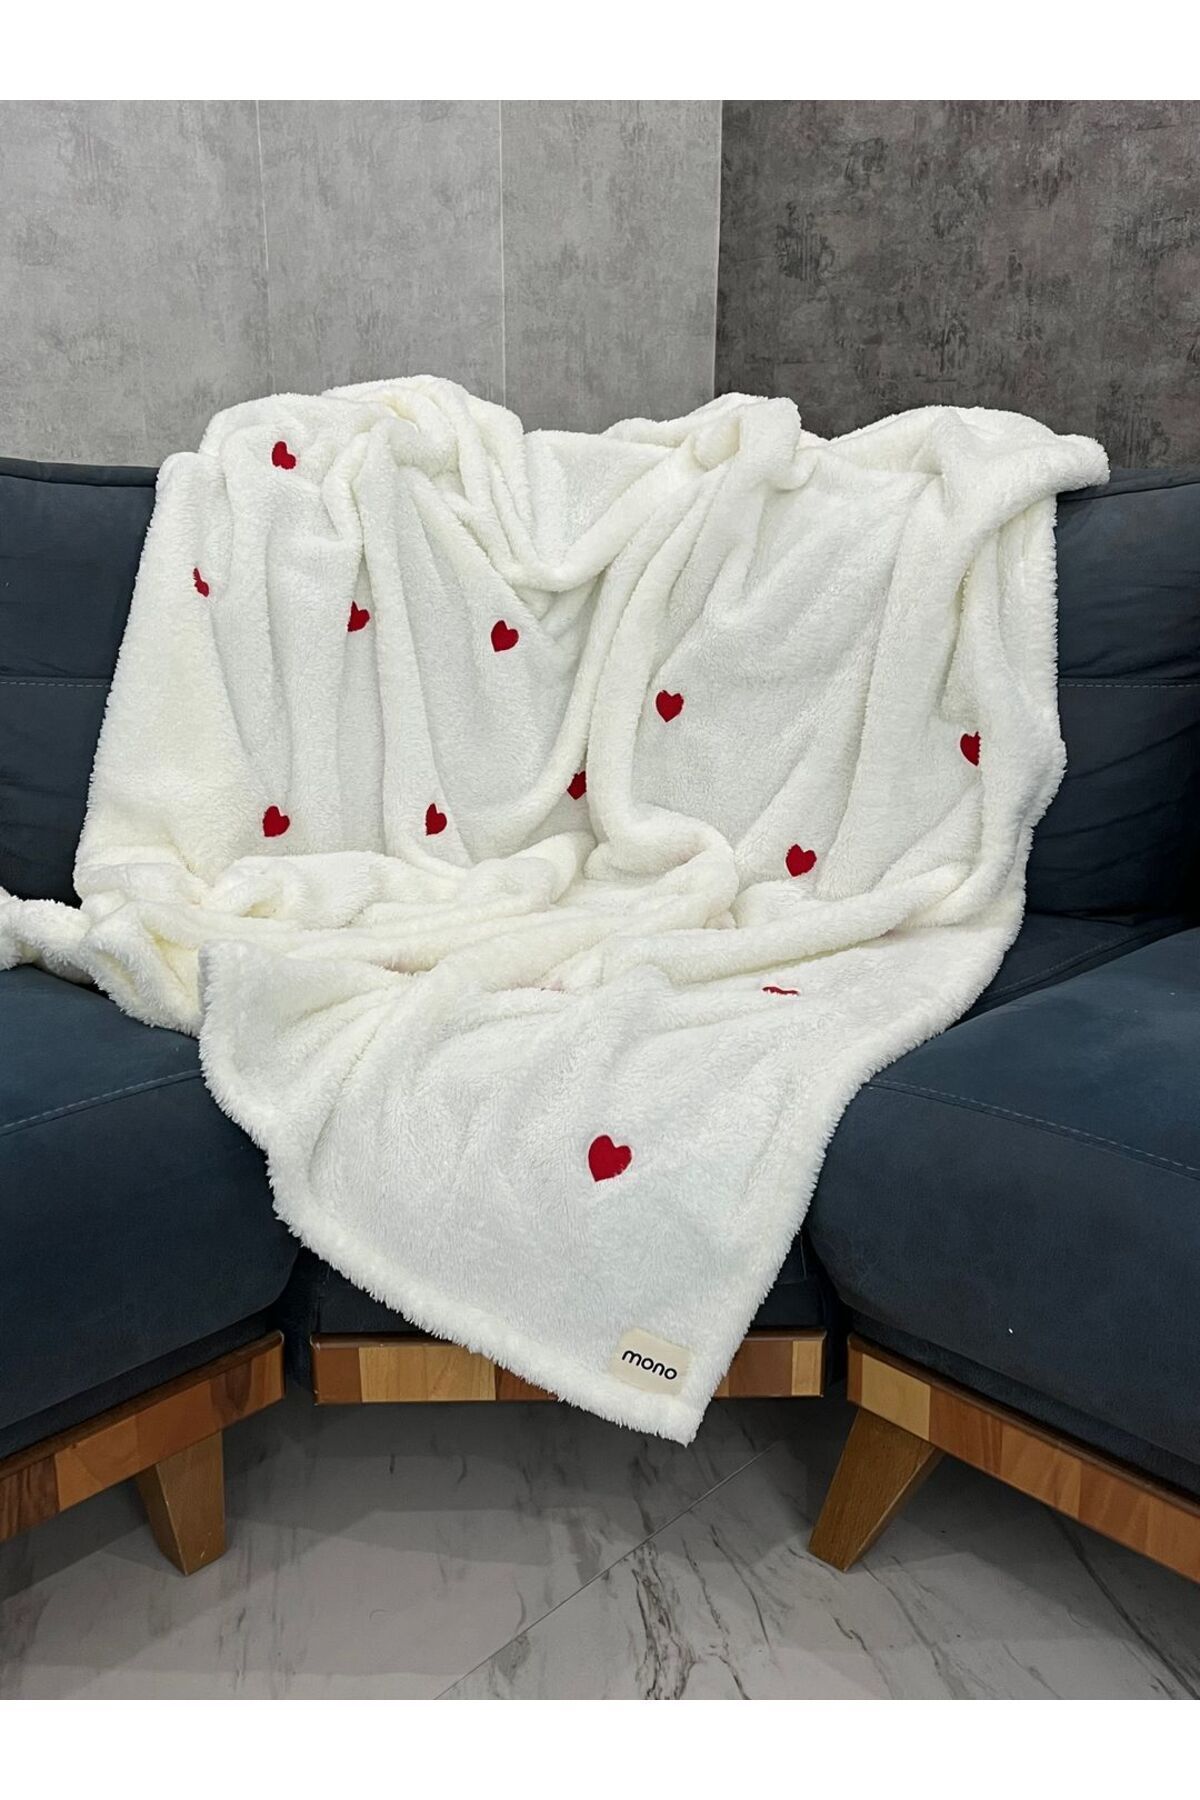 MONO Welsoft Kalp Nakışlı Tv Battaniyesi, 150x180 Yumuşak Koltuk Şalı, Beyaz Tv Battaniyesi